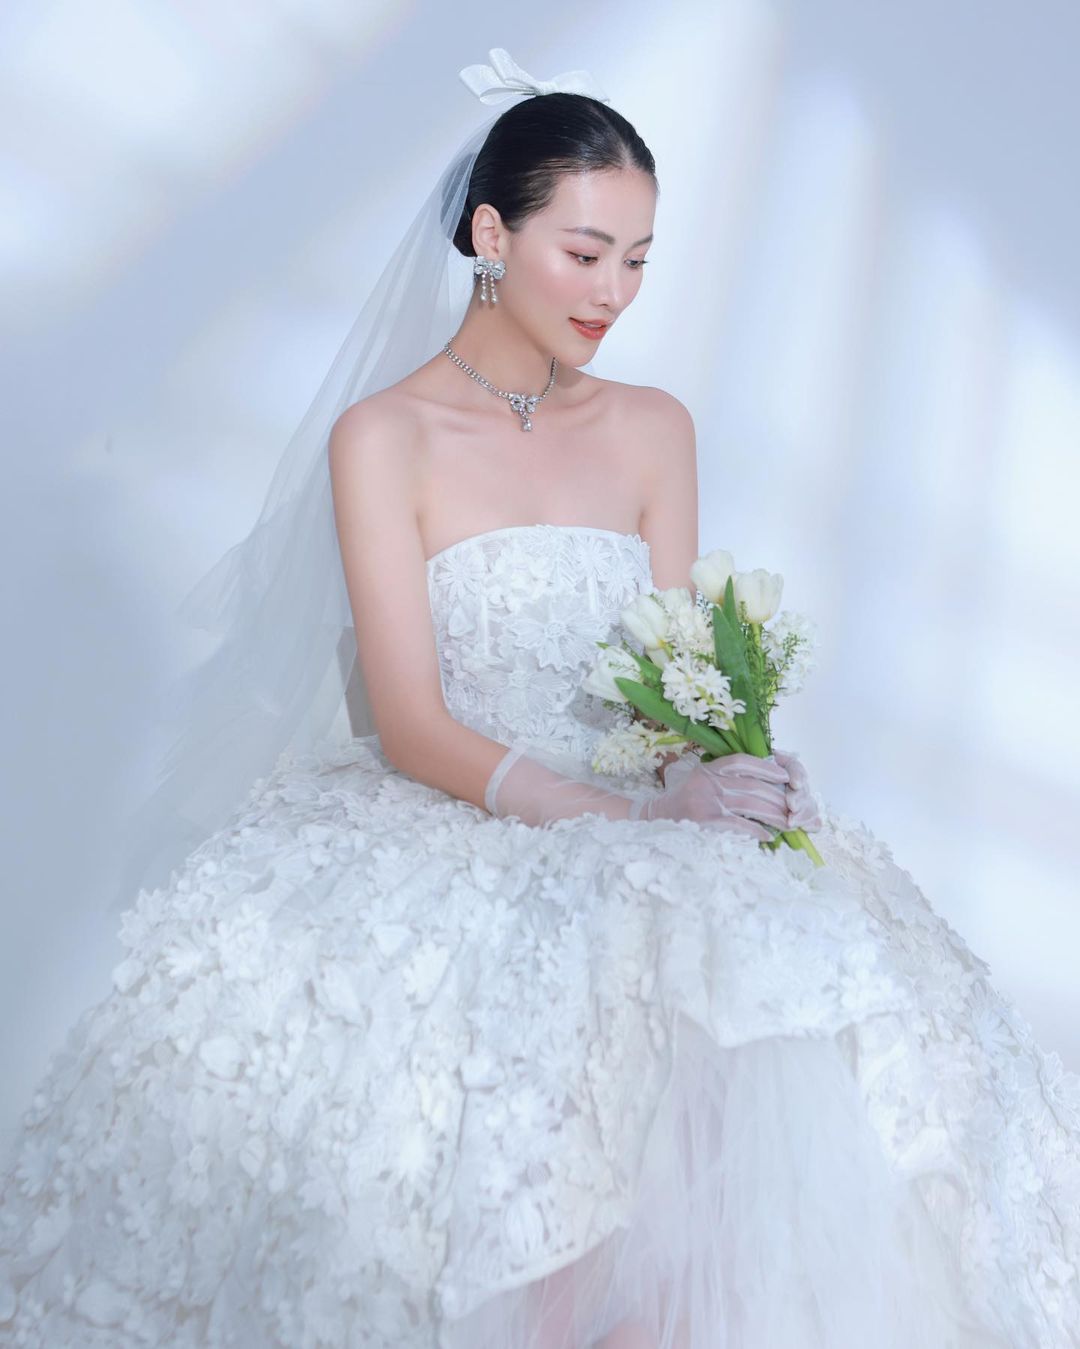 Hoa hậu Phương Khánh bất ngờ đăng ảnh mặc váy cưới để thông báo ngày đặc biệt  - Ảnh 1.